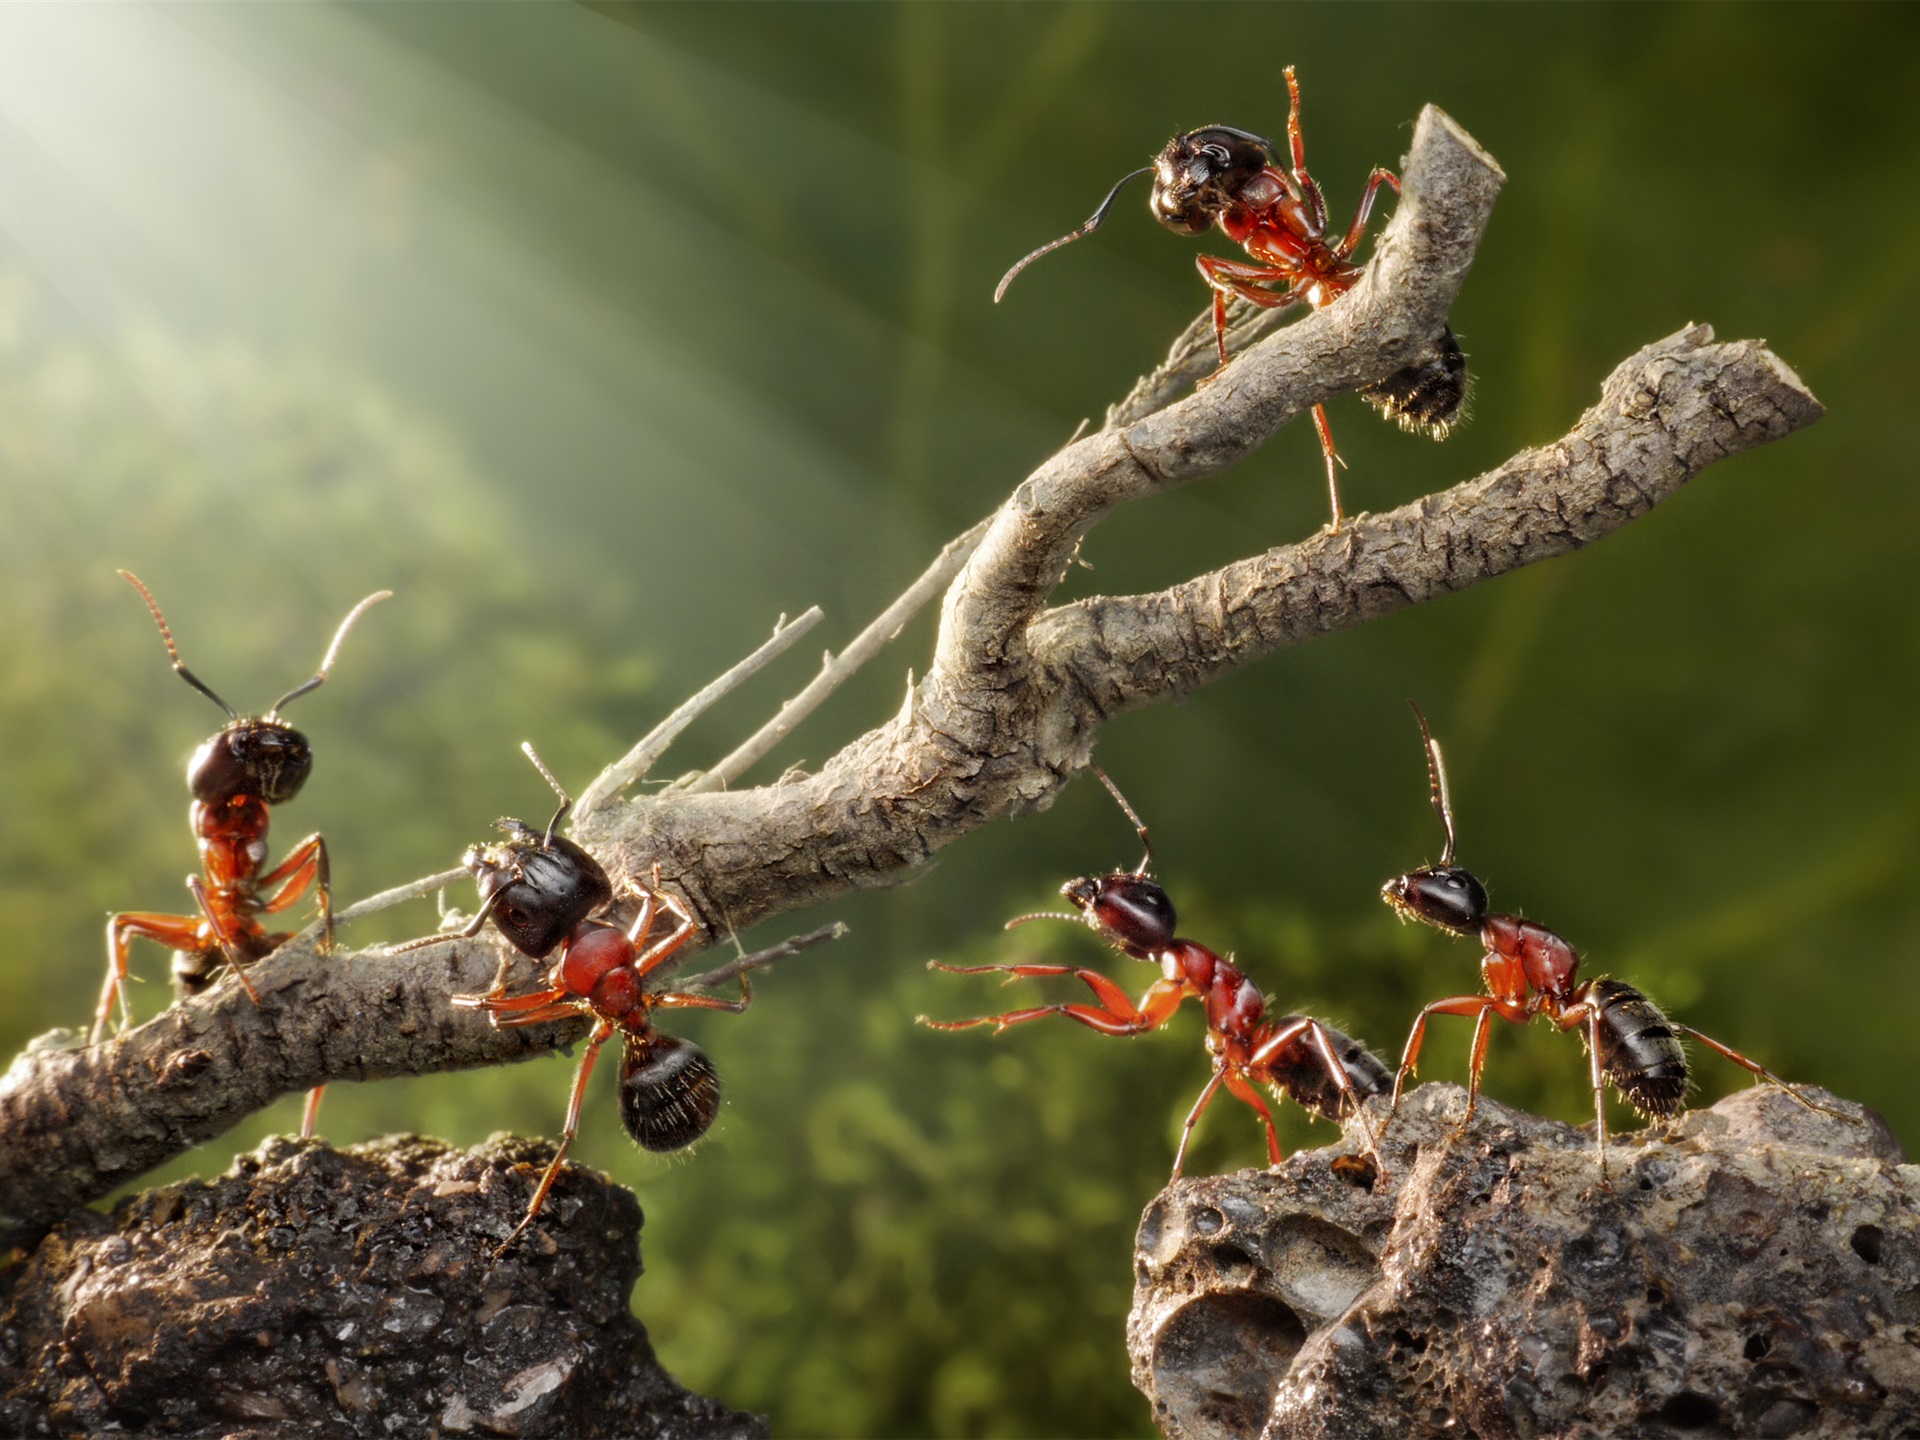 Científicos calculan cuántas hormigas hay en el mundo Las hormigas se han convertido en uno de los insectos más interesantes de investigar, no solo por su forma de trabajar y establecer relaciones de poder.    https://larevistadelsureste.com